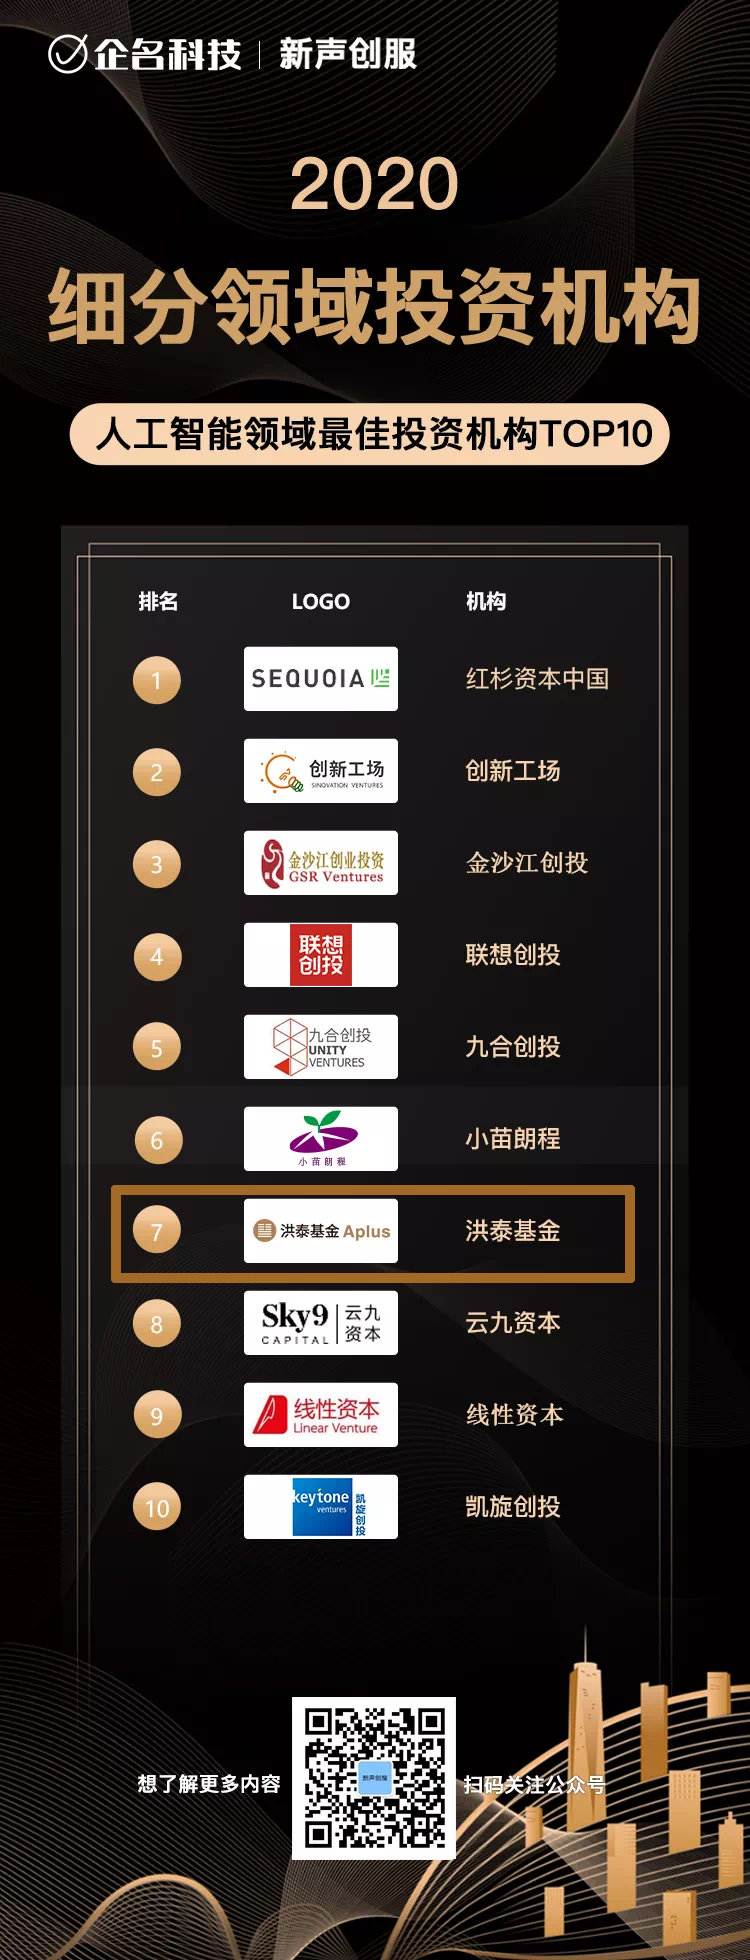 洪泰基金获2020年度中国投资机构榜单4项大奖(图3)